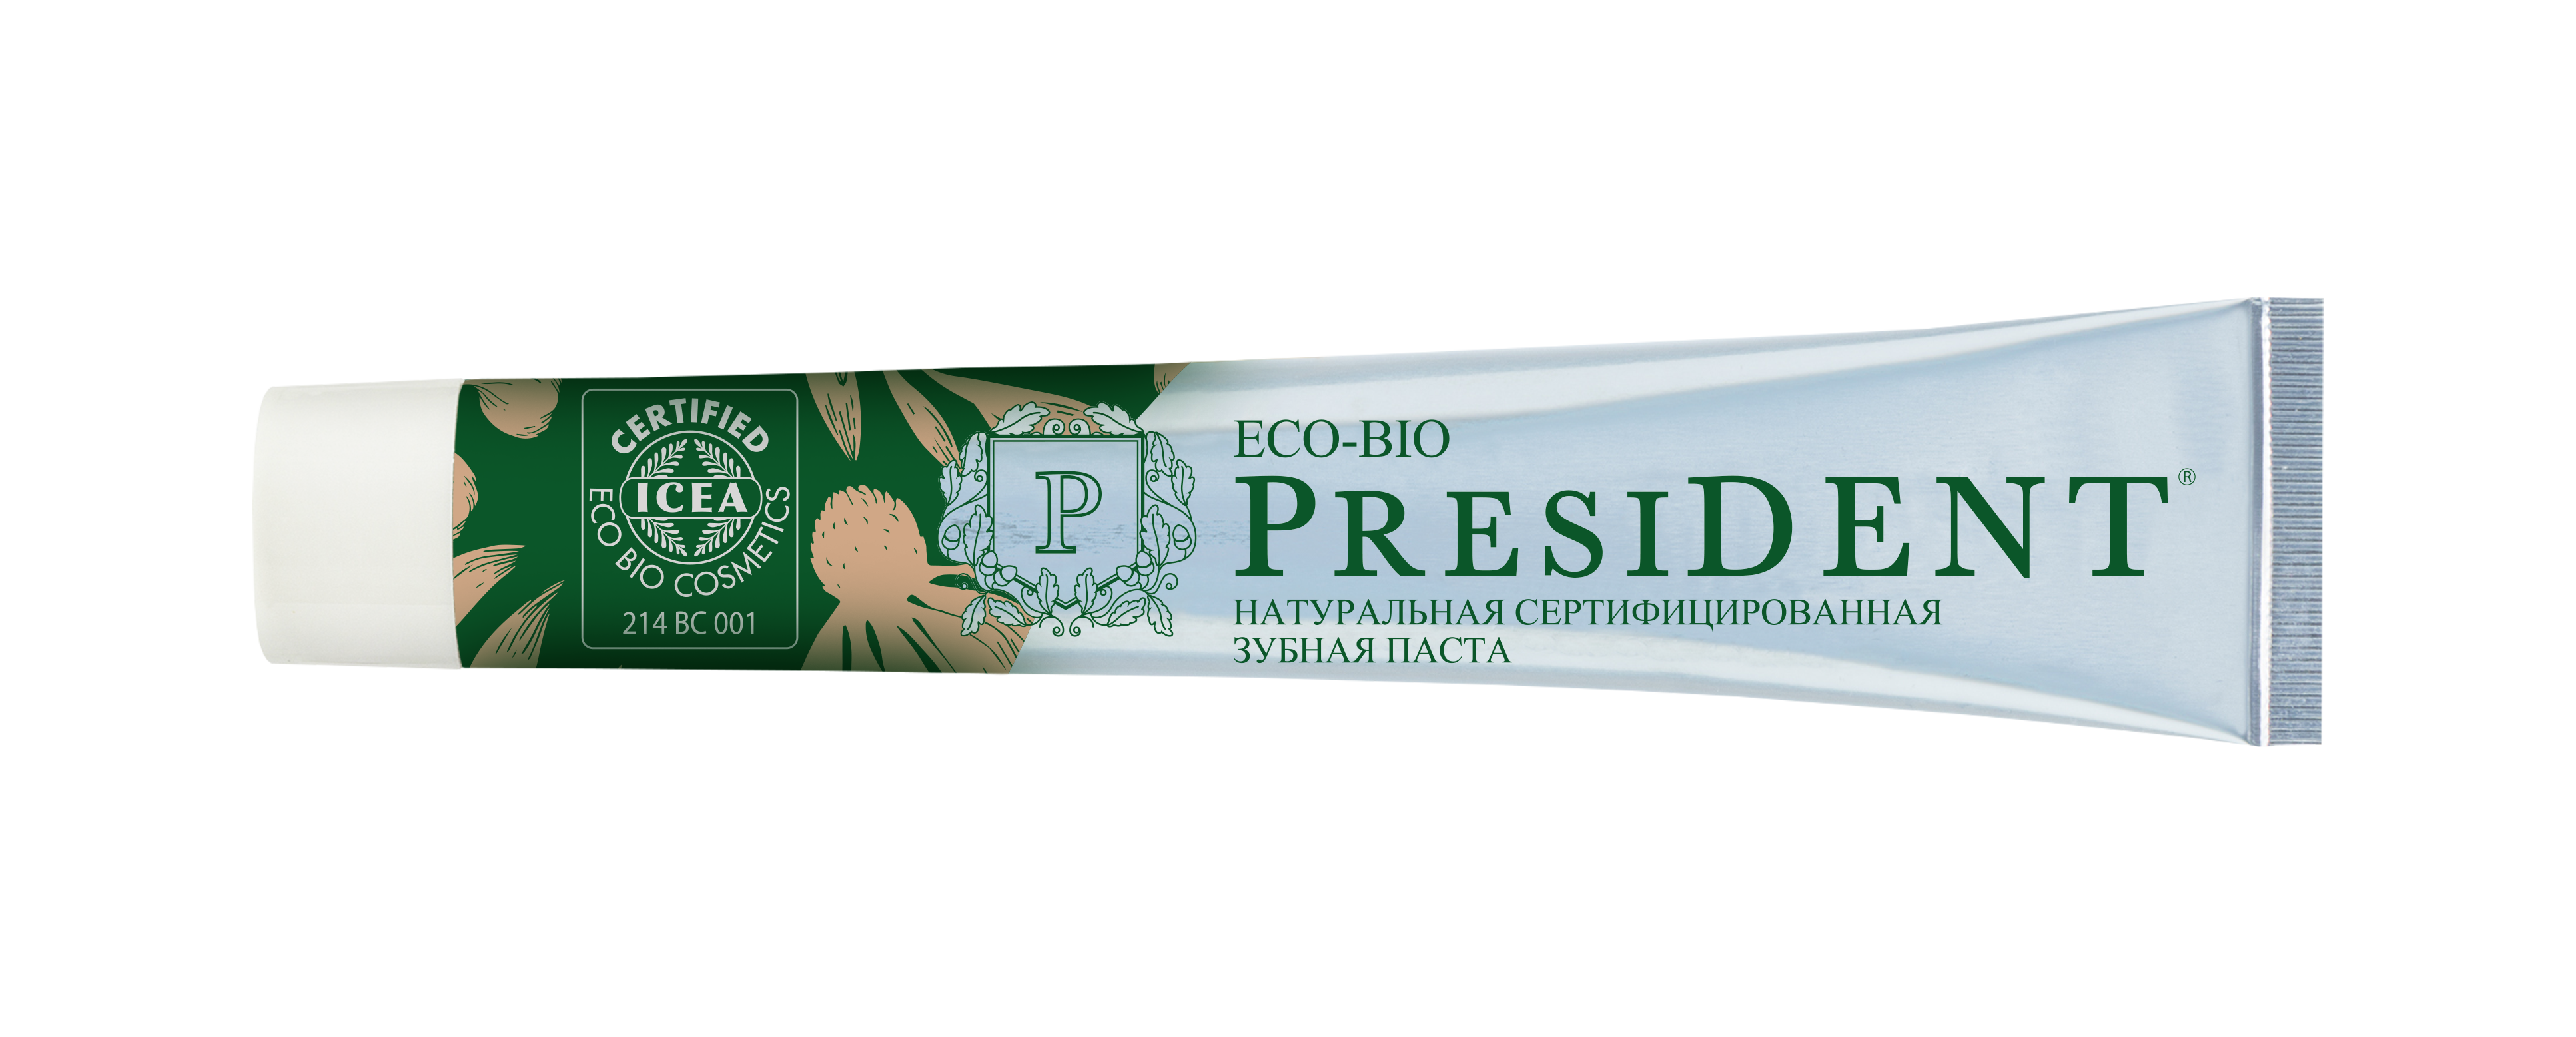 Купить Зубная паста PresiDENT Eco-Bio натуральная 75 мл